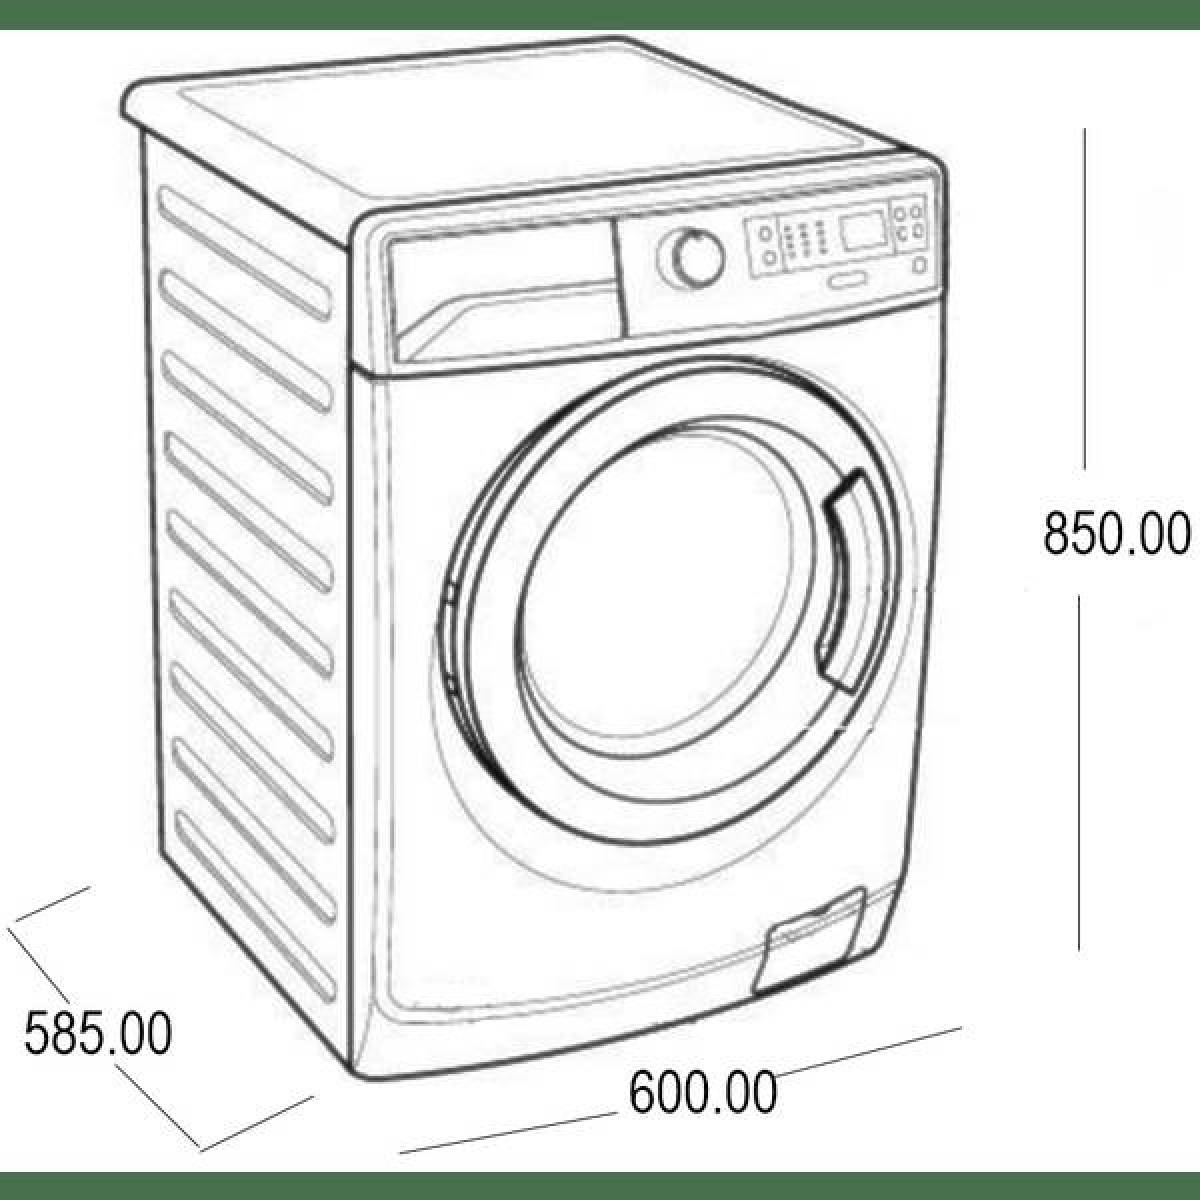 Modern washing machine coloring page